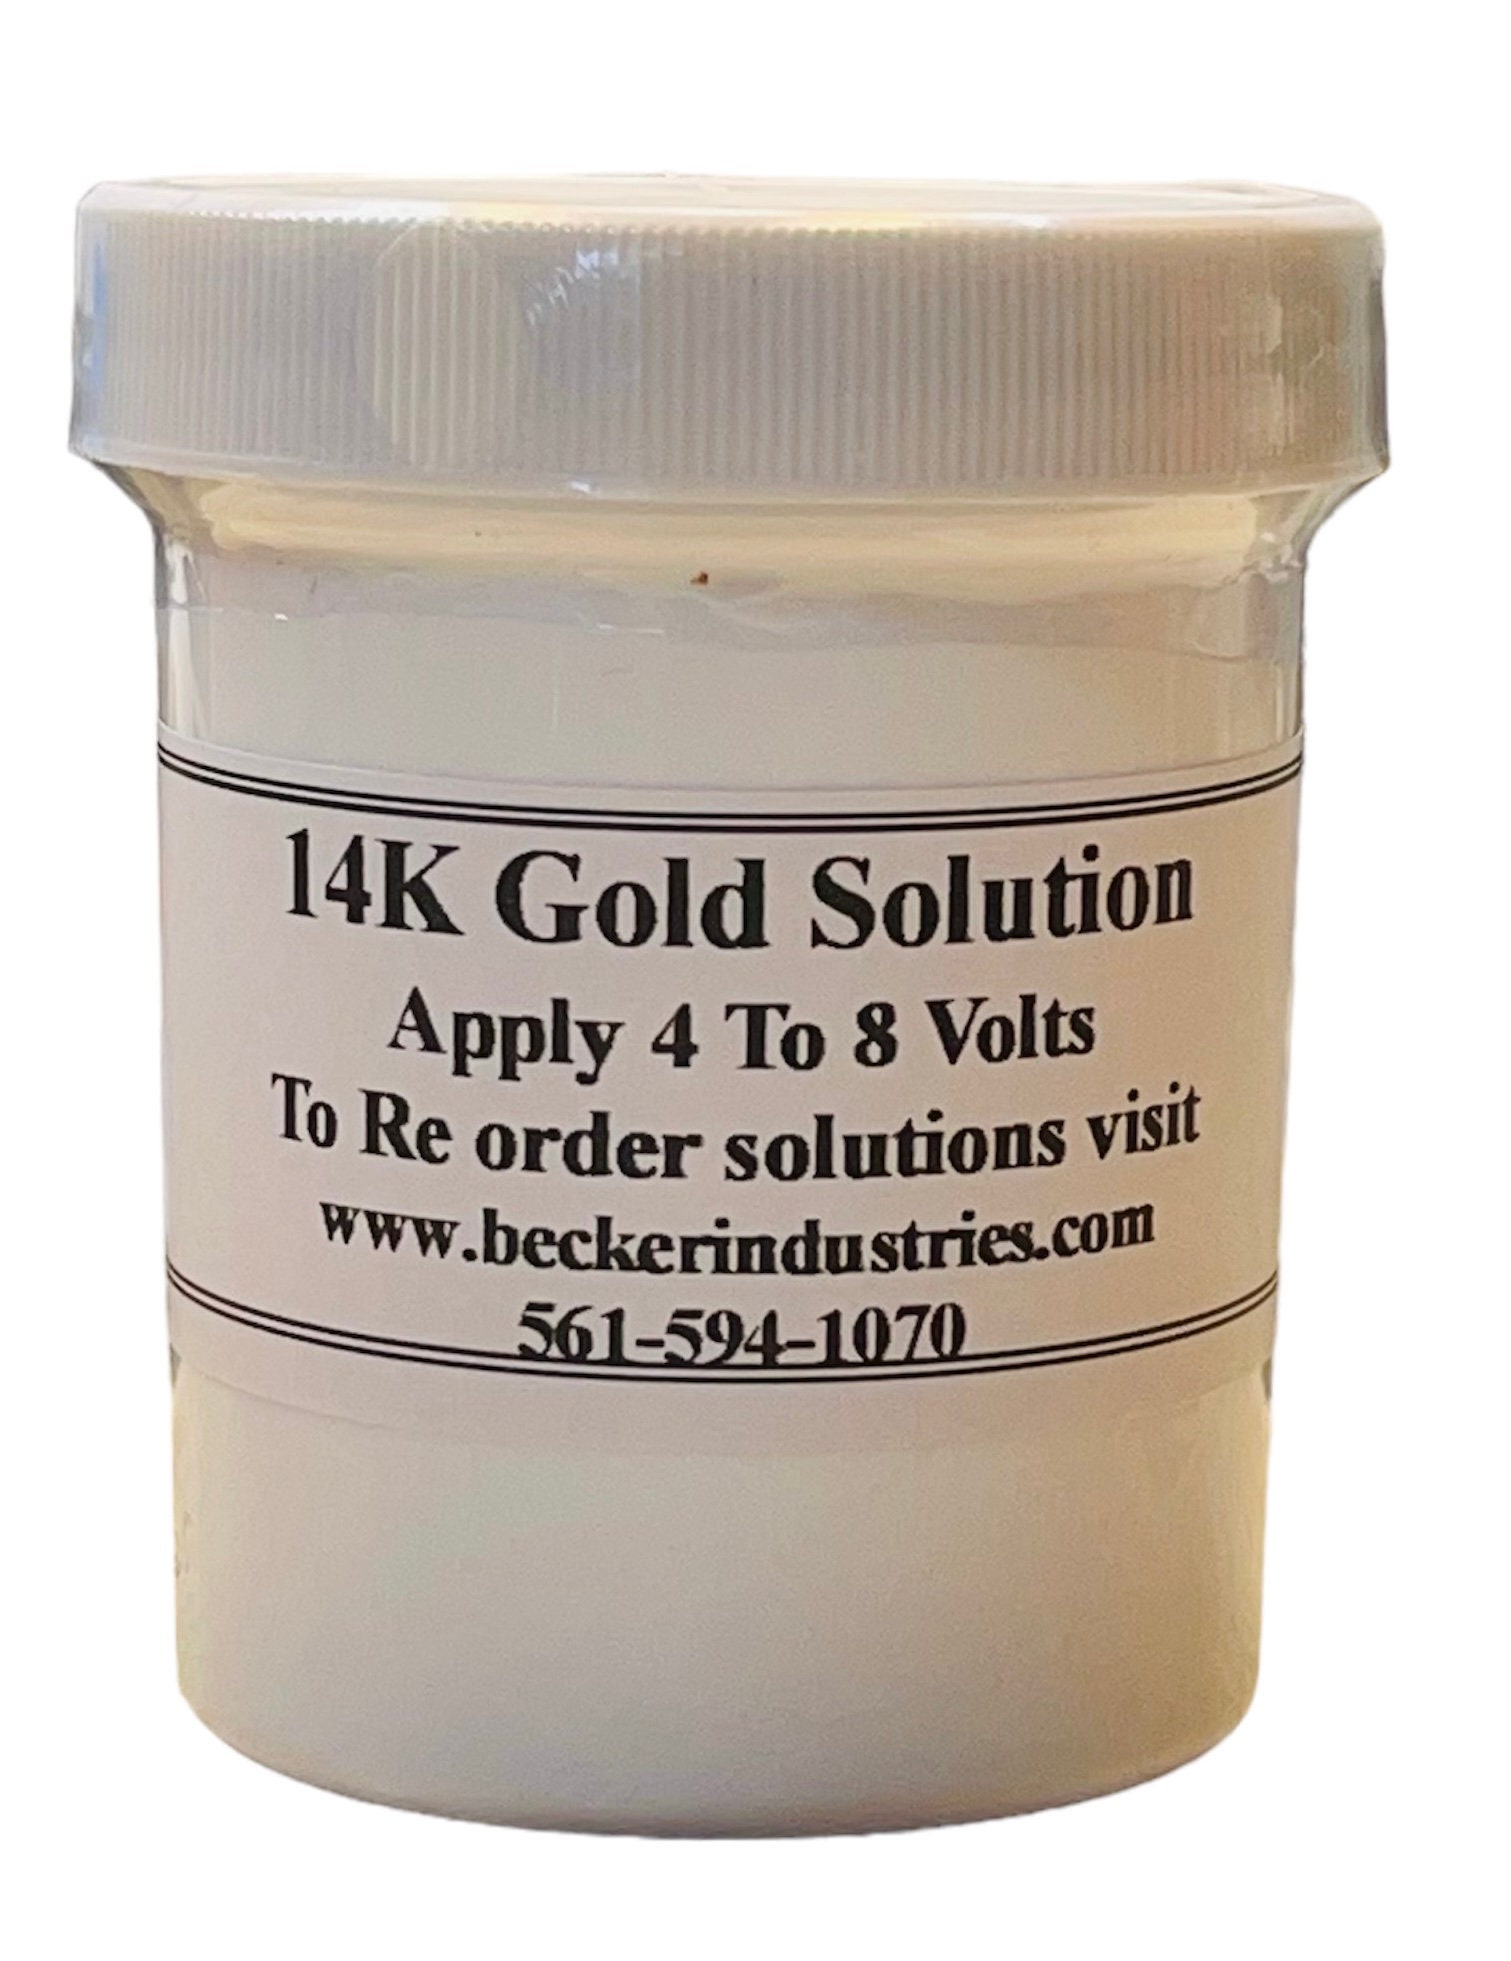 24K Gold solution, Electroplating Solution Industrial Grade, 32oz